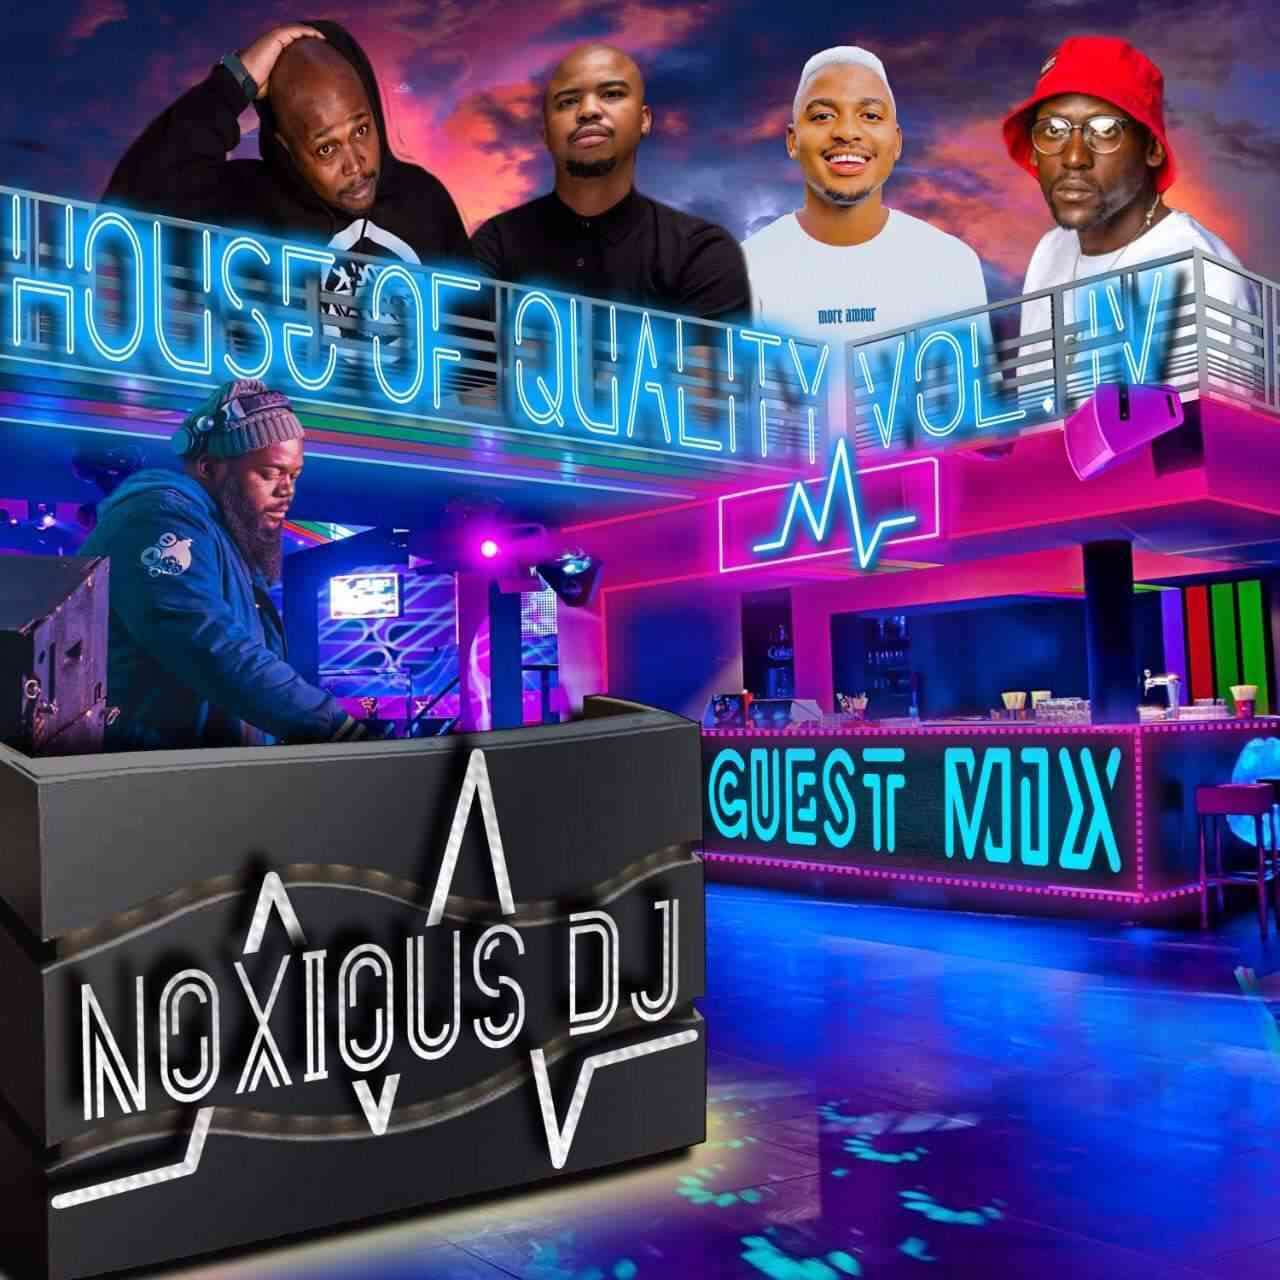 Noxious DJ House Of Quality Vol.4 (Guest Mix)